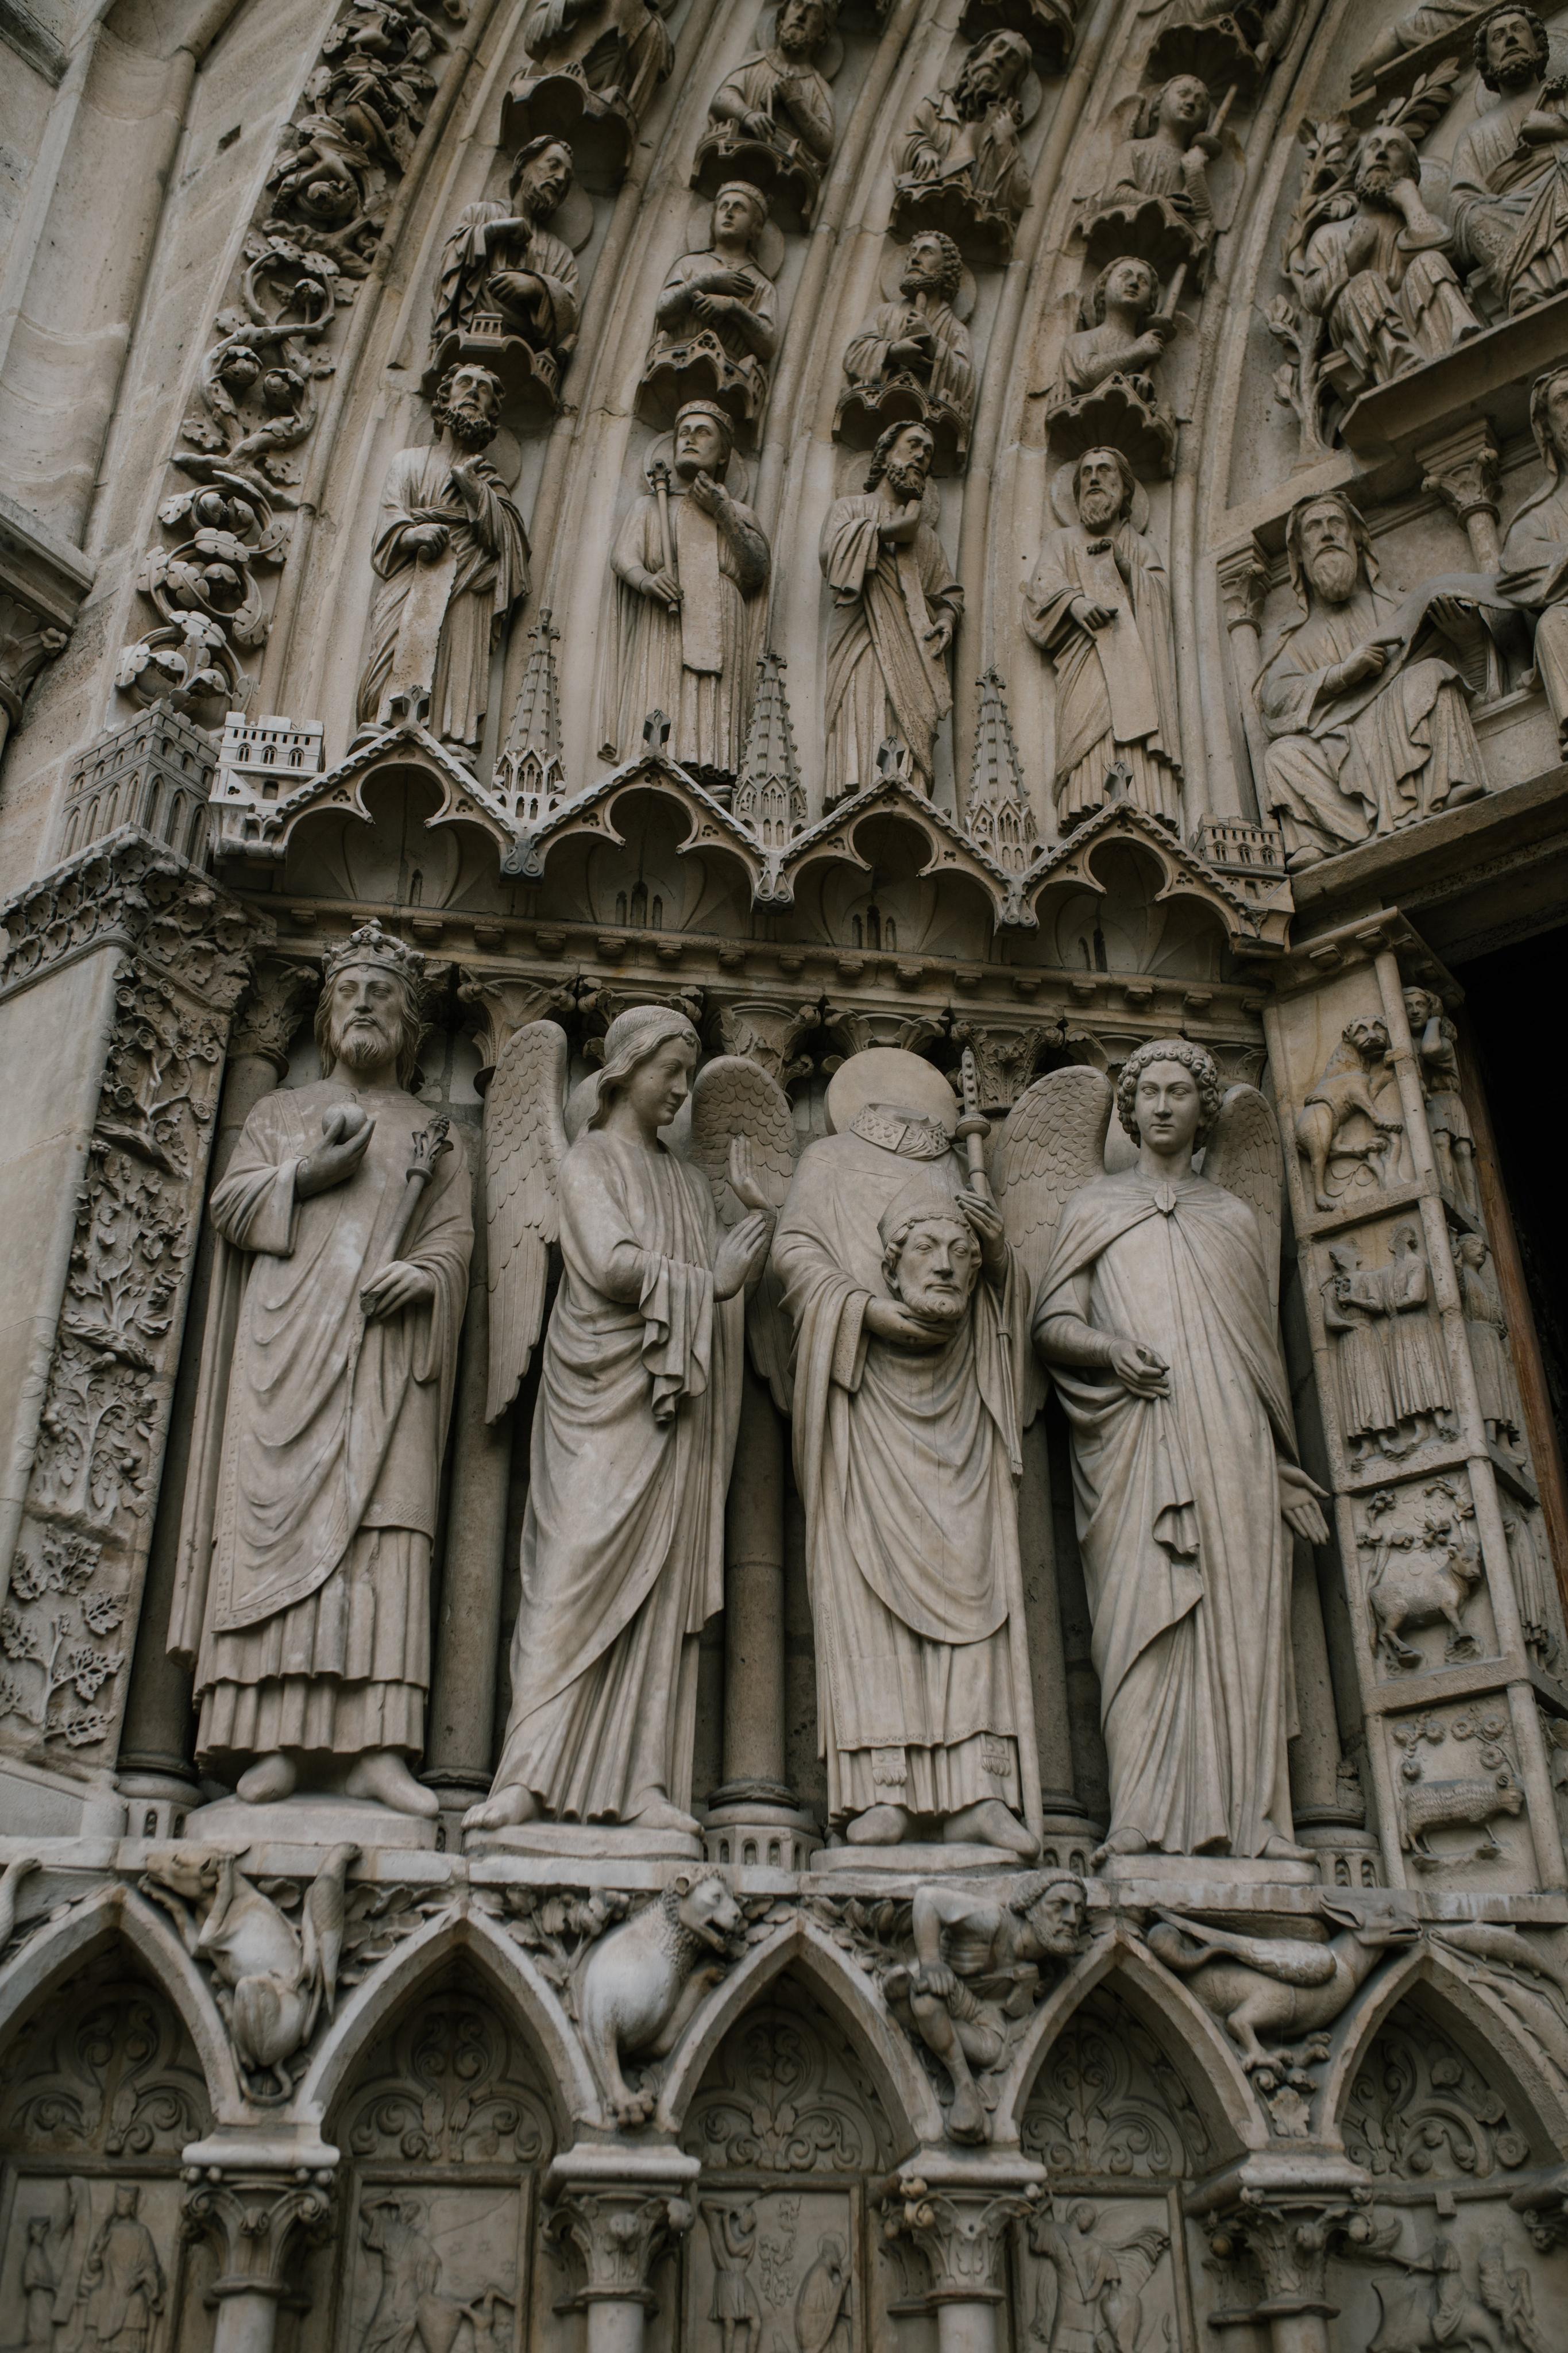 Architektura sakralna legnicy jako źródło średniowiecznej sztuki